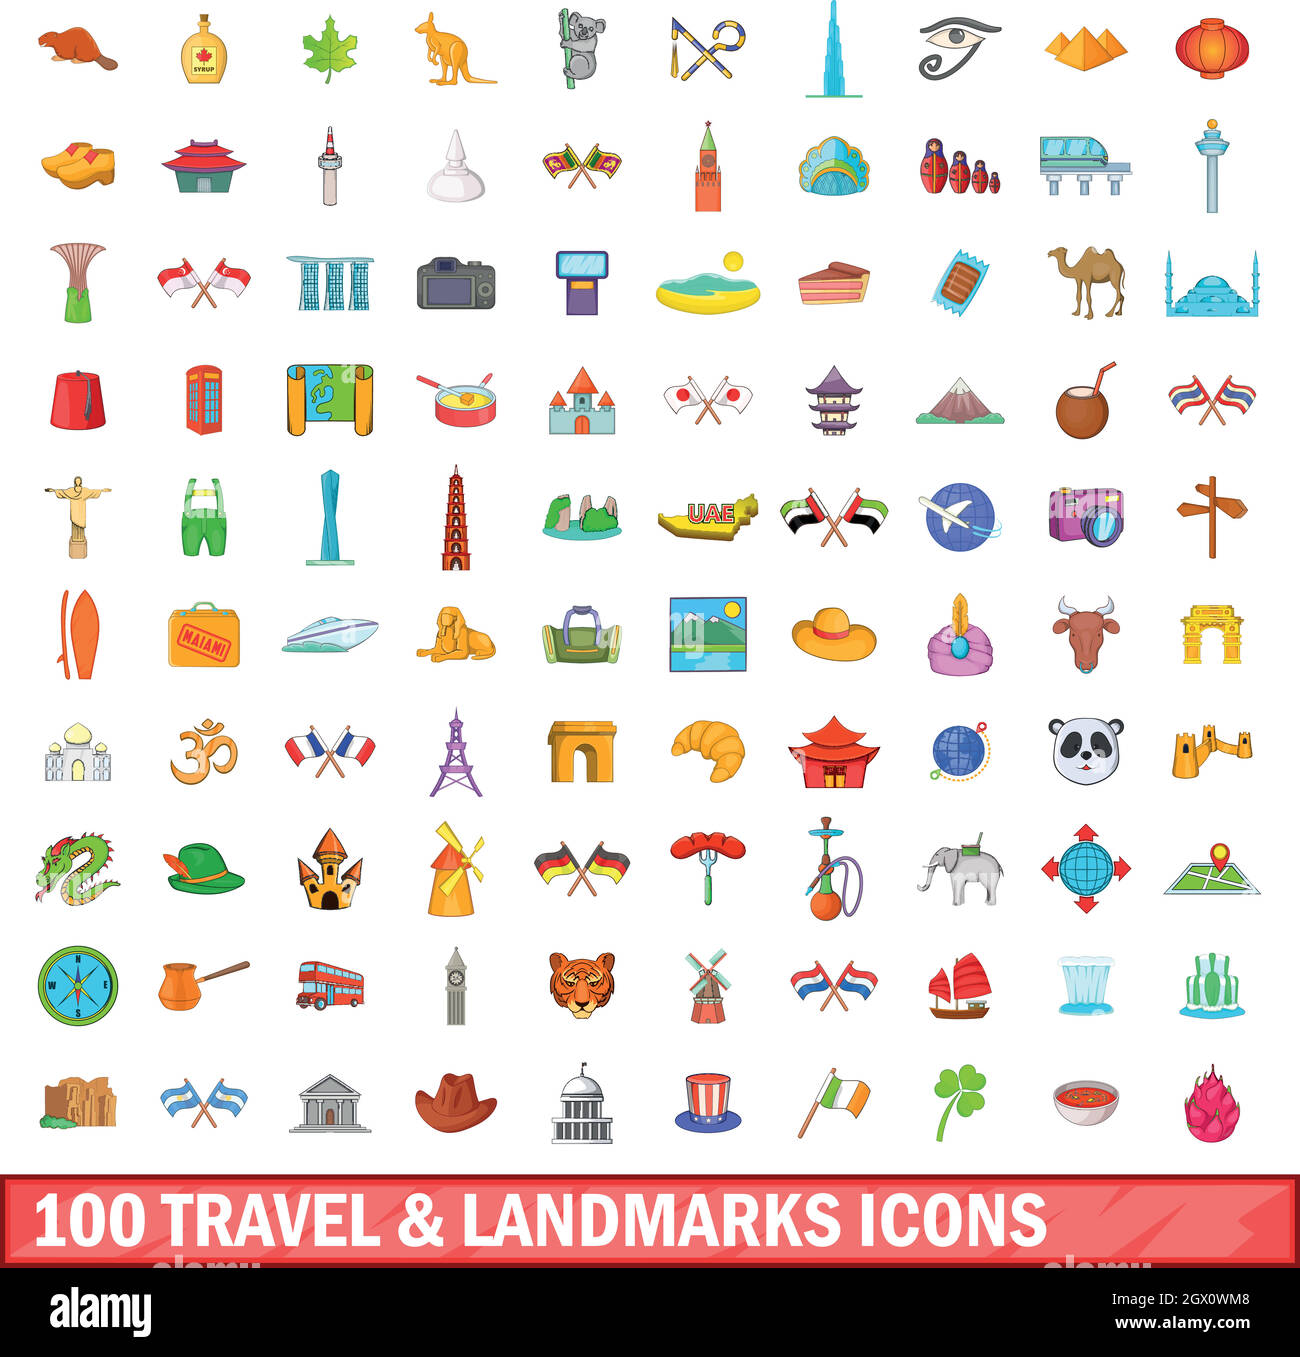 Voyage 100 sites et icons set, cartoon style Illustration de Vecteur